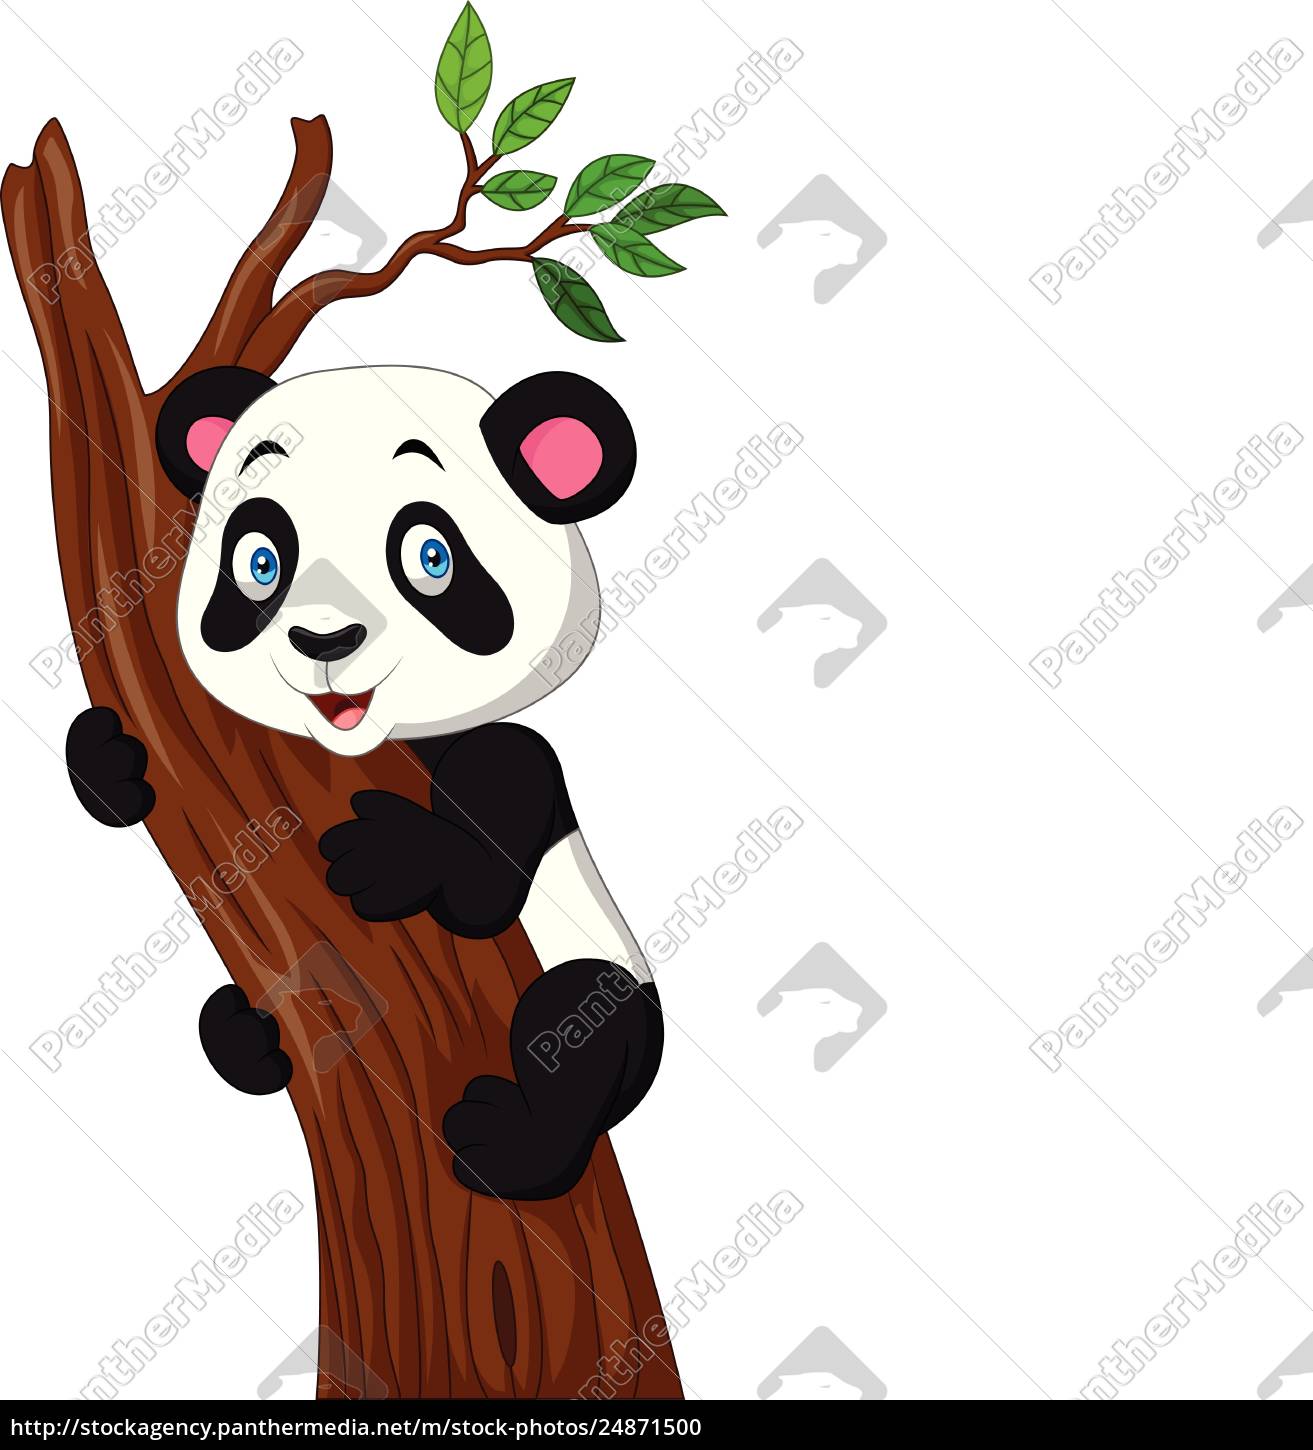 Desenhos Animados Bonitos Da Panda Ilustração do Vetor - Ilustração de  selva, protegido: 115752096